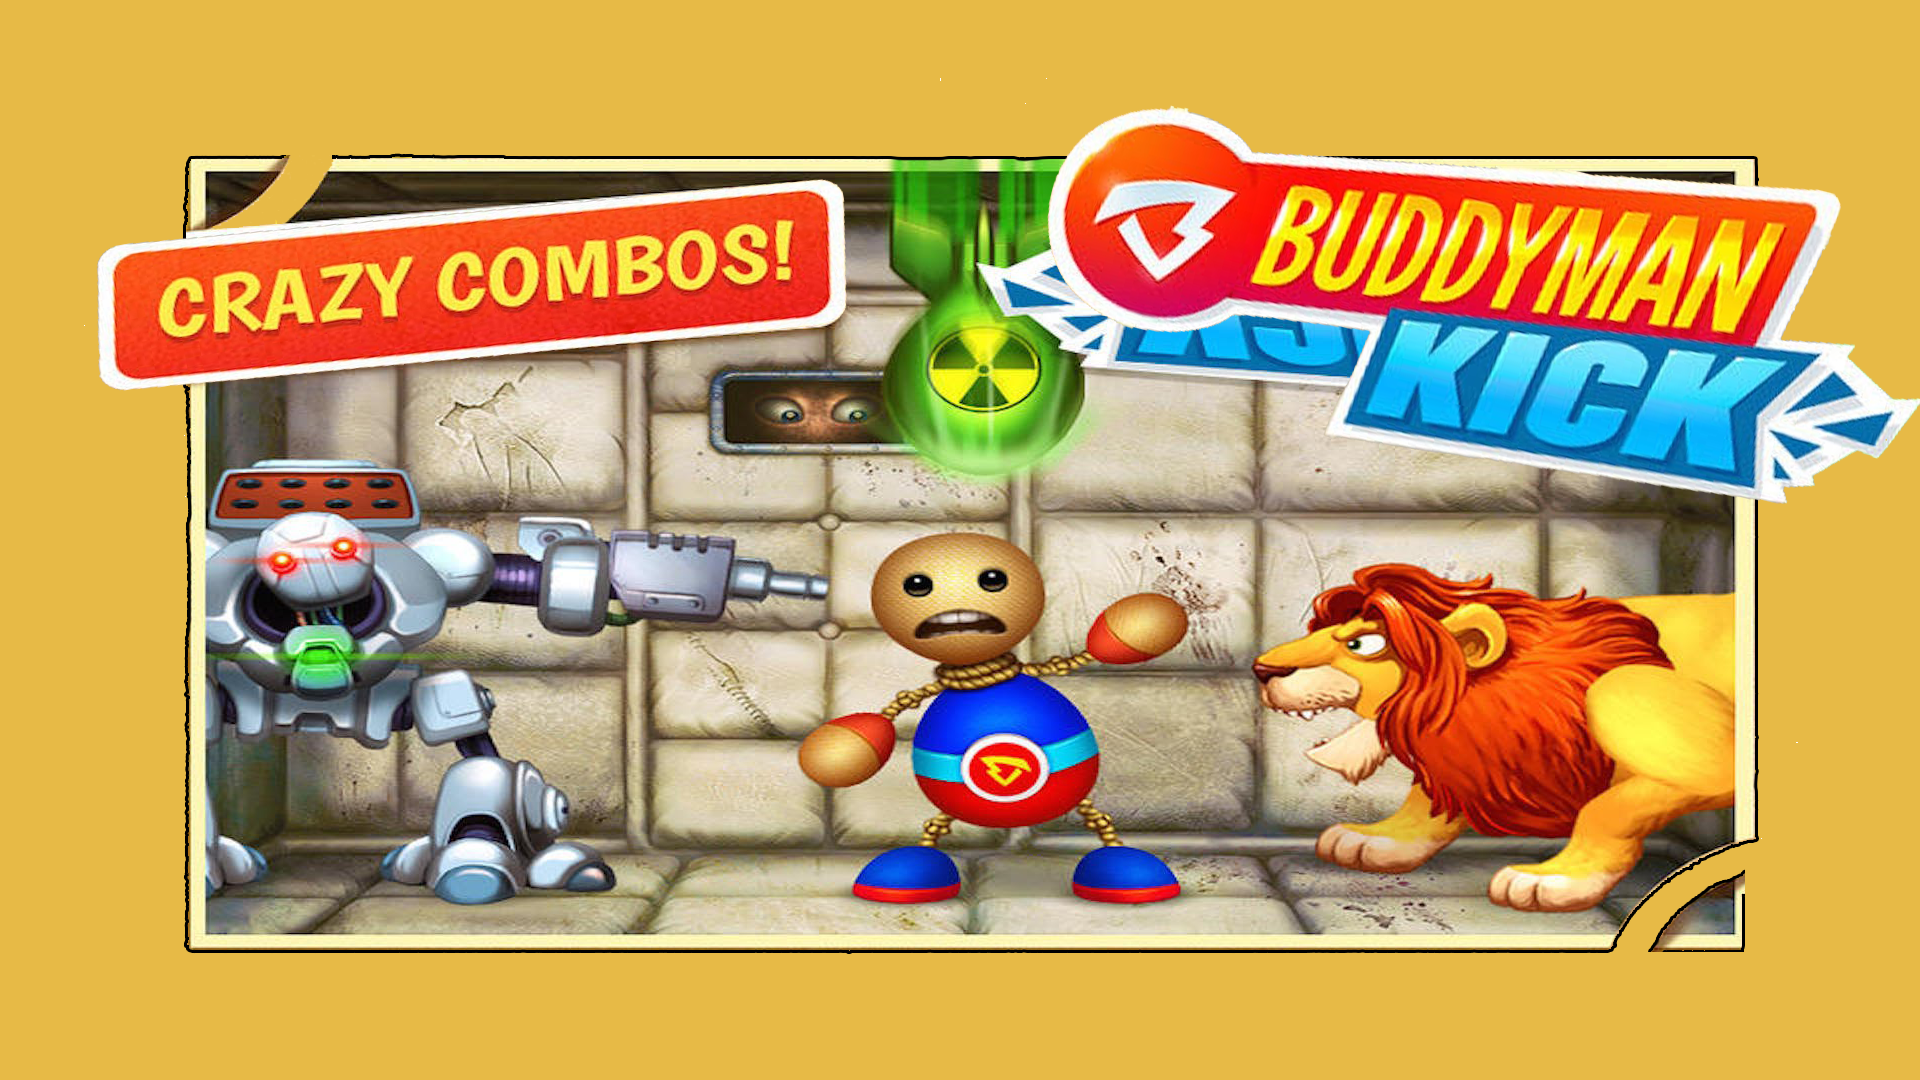 Screenshot 1 of Super Buddyman Kick 2 - Permainan Pengembaraan Larian 2.2.0